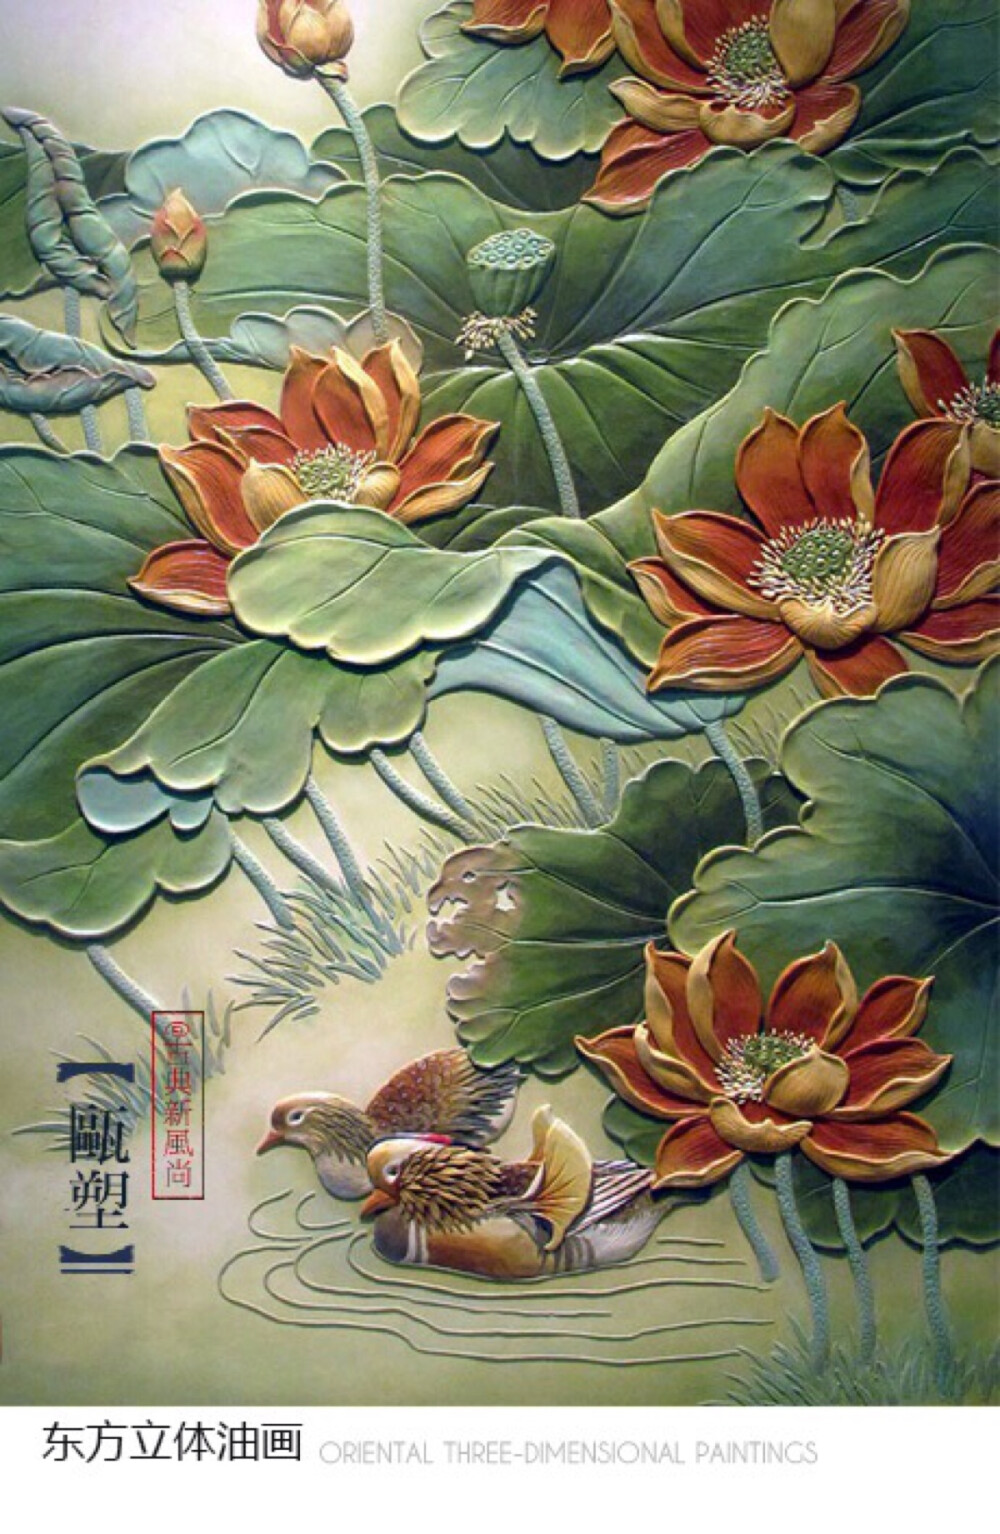 瓯塑俗称油泥塑,是浙江温州民间独有的传统美术工艺,被誉为东方的